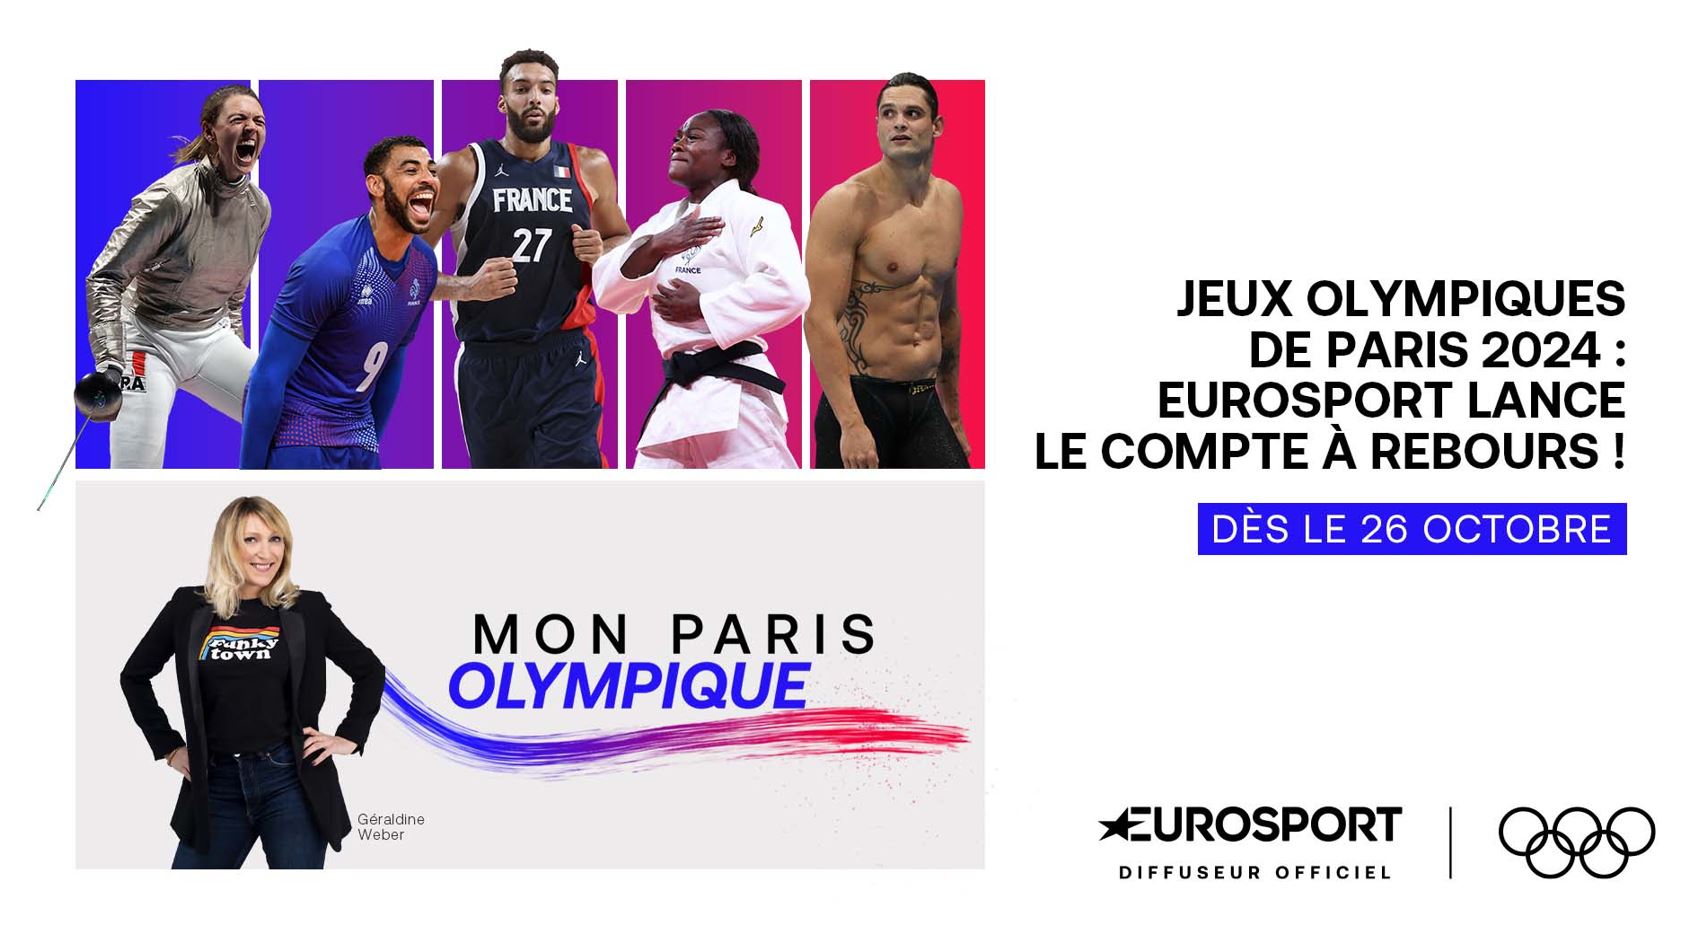 « Mon Paris Olympique » : Eurosport lance le compte-à-rebours pour les Jeux Olympiques de Paris 2024